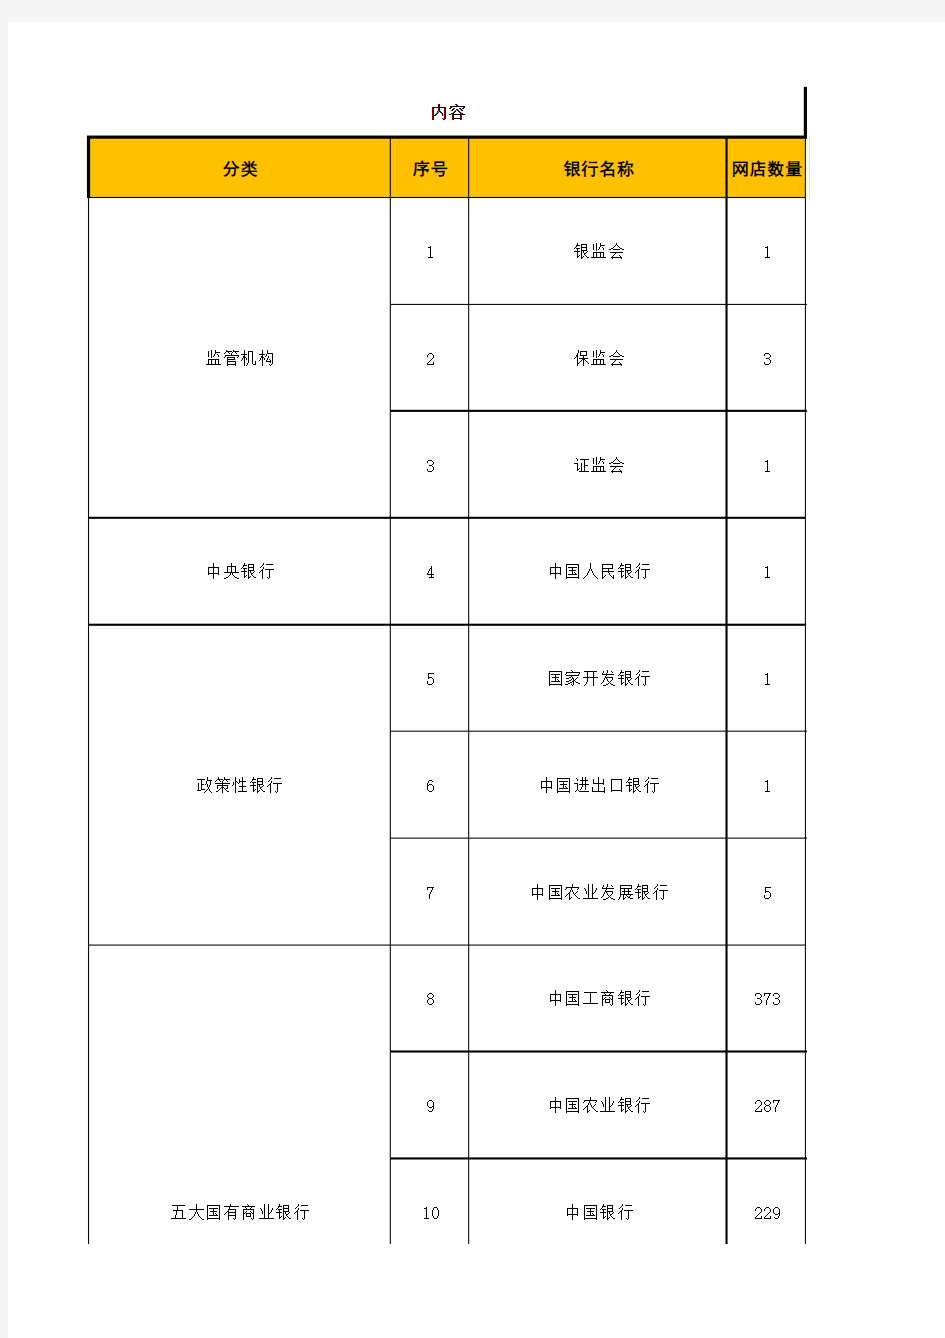 广州区域银行网点数量统计表【最终版】